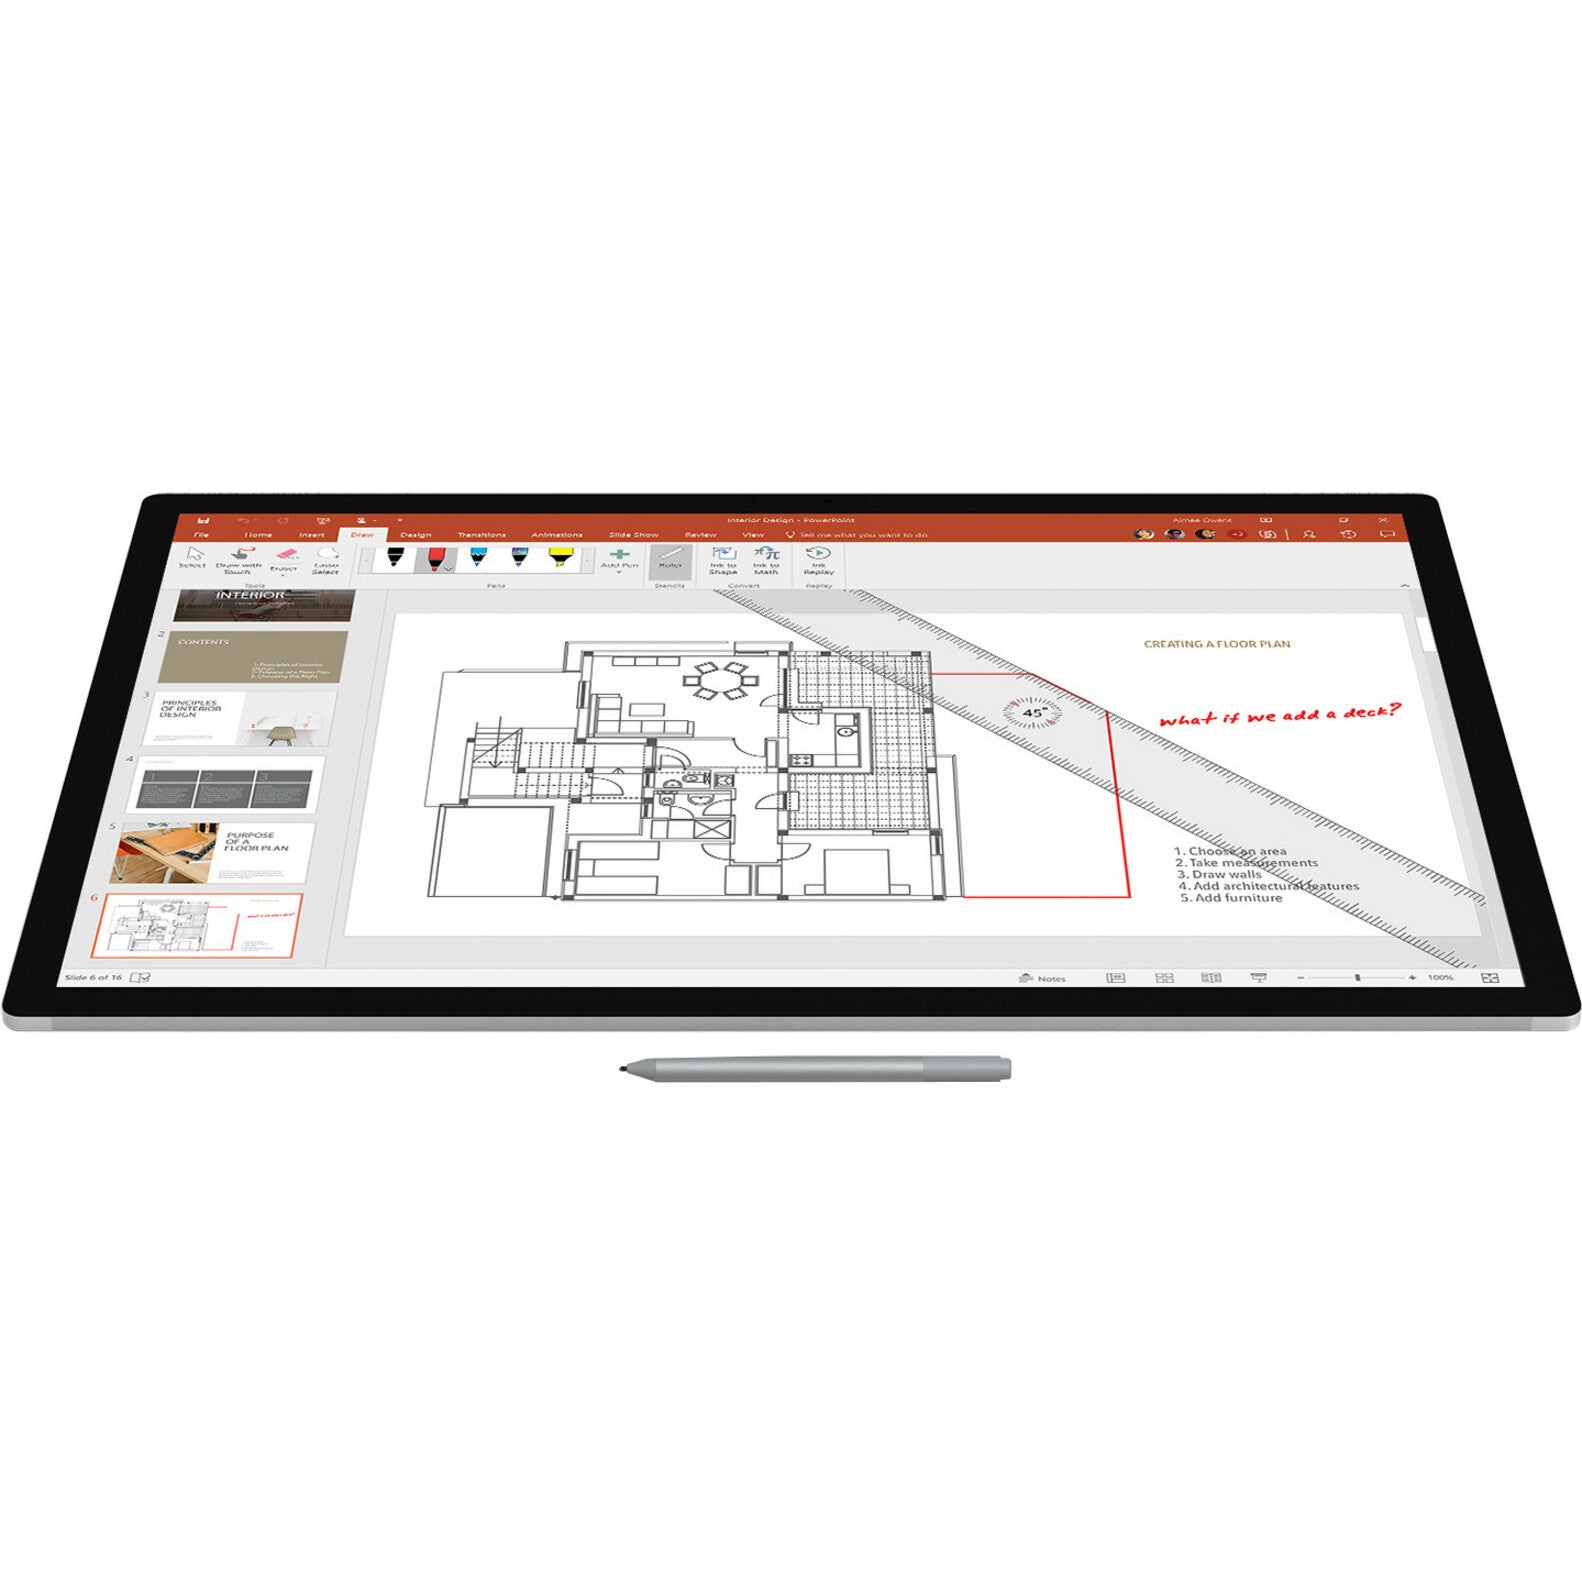 Microsoft EYV-00009 Surface Pen, Platinum - Compatible with Surface Laptop, Surface Book, Surface Pro, and More